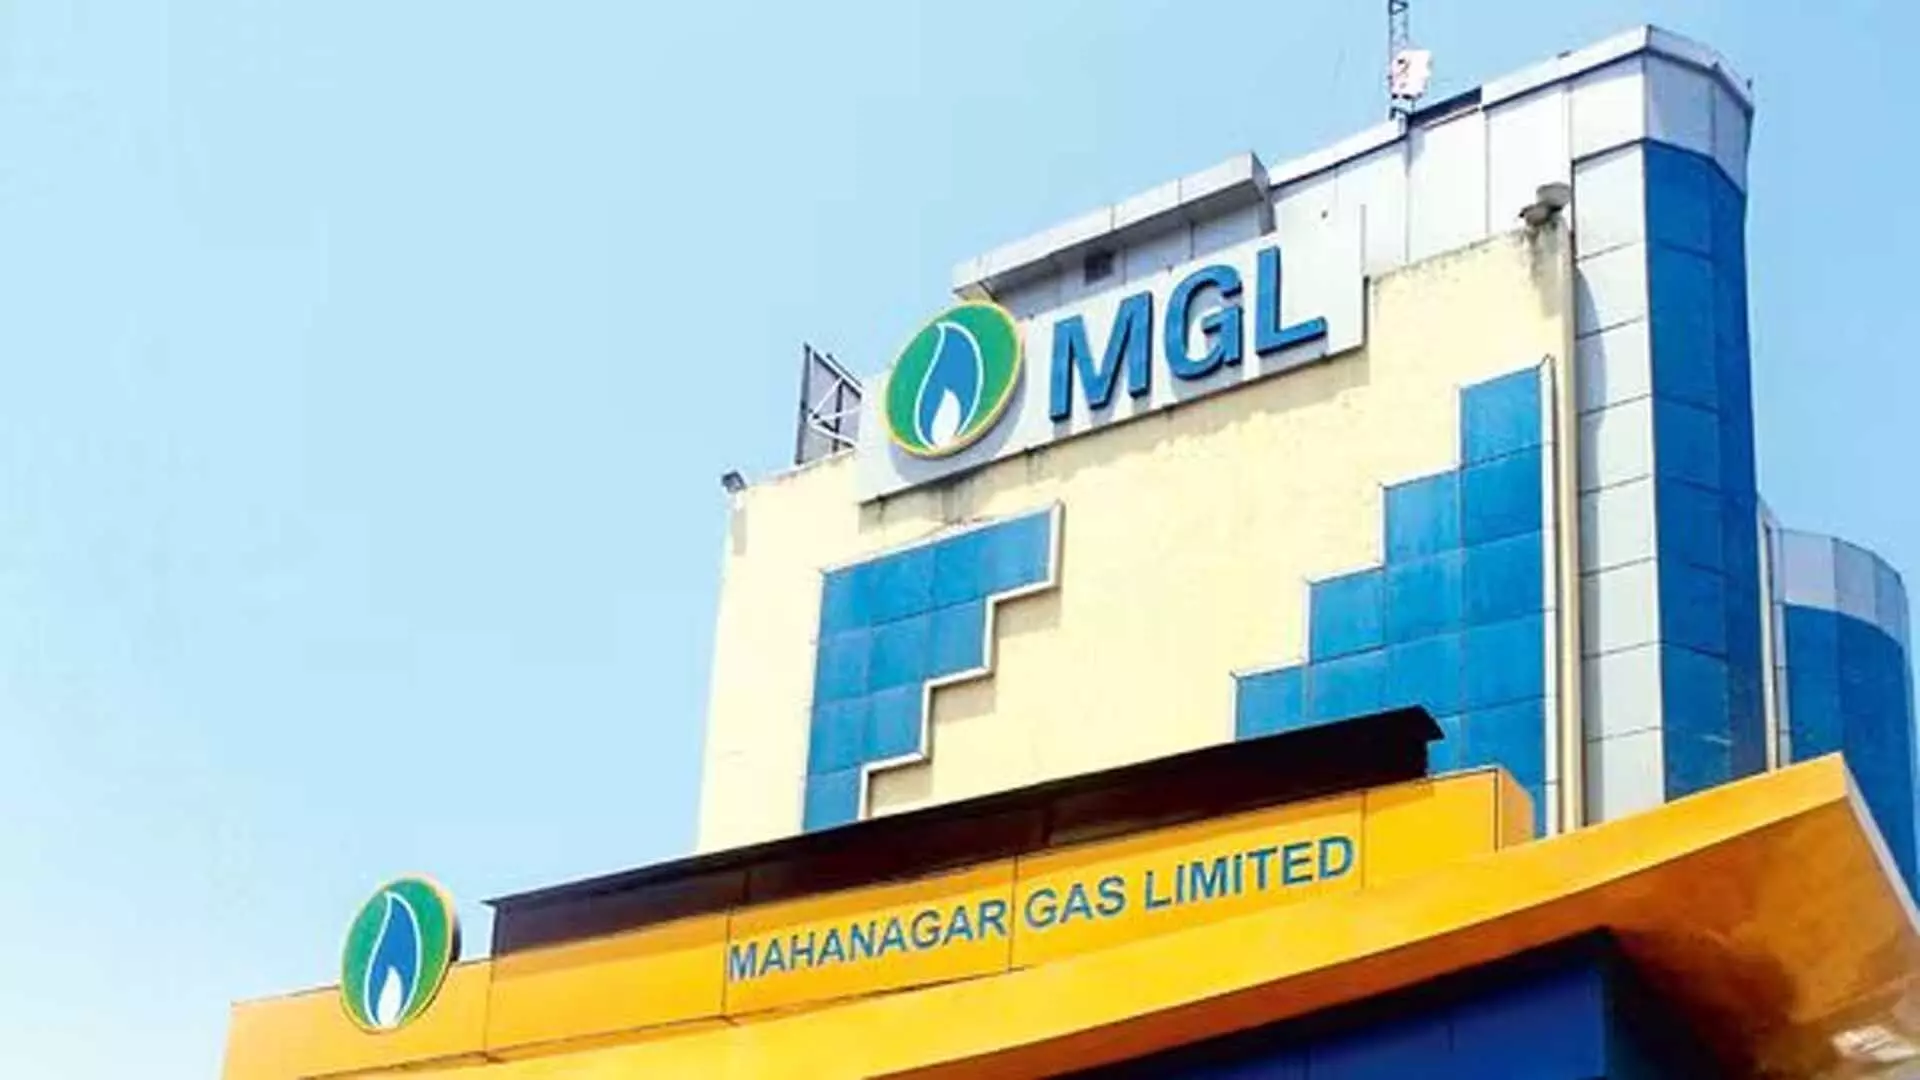 Mahanagar गैस ने मुंबई में सीएनजी और घरेलू पीएनजी की कीमतें बढ़ाईं